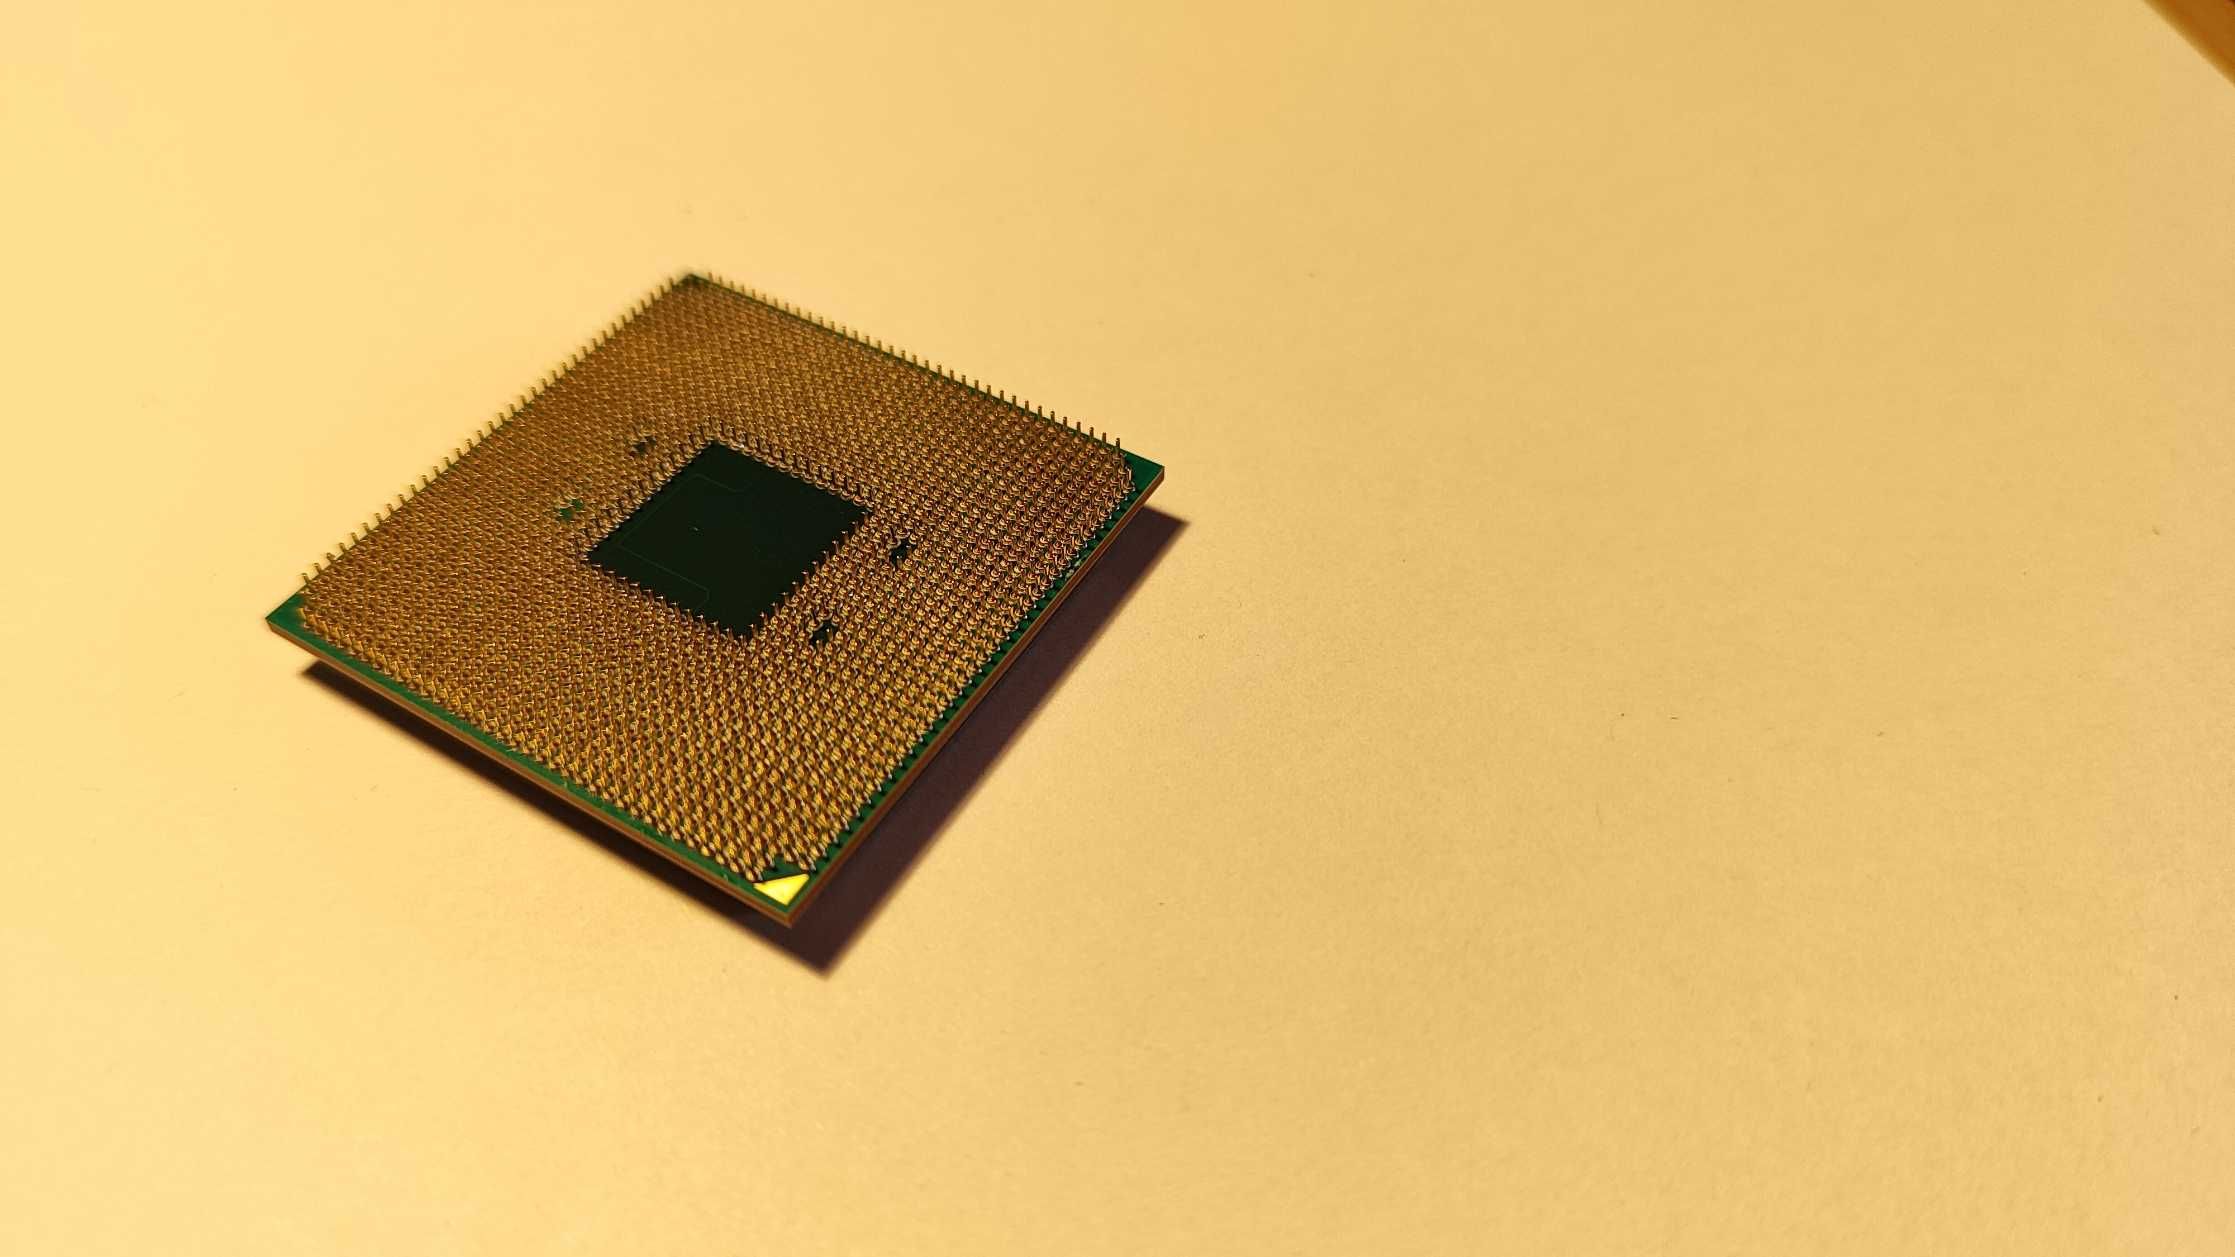 Procesor AMD ryzen 3 pro 3200g